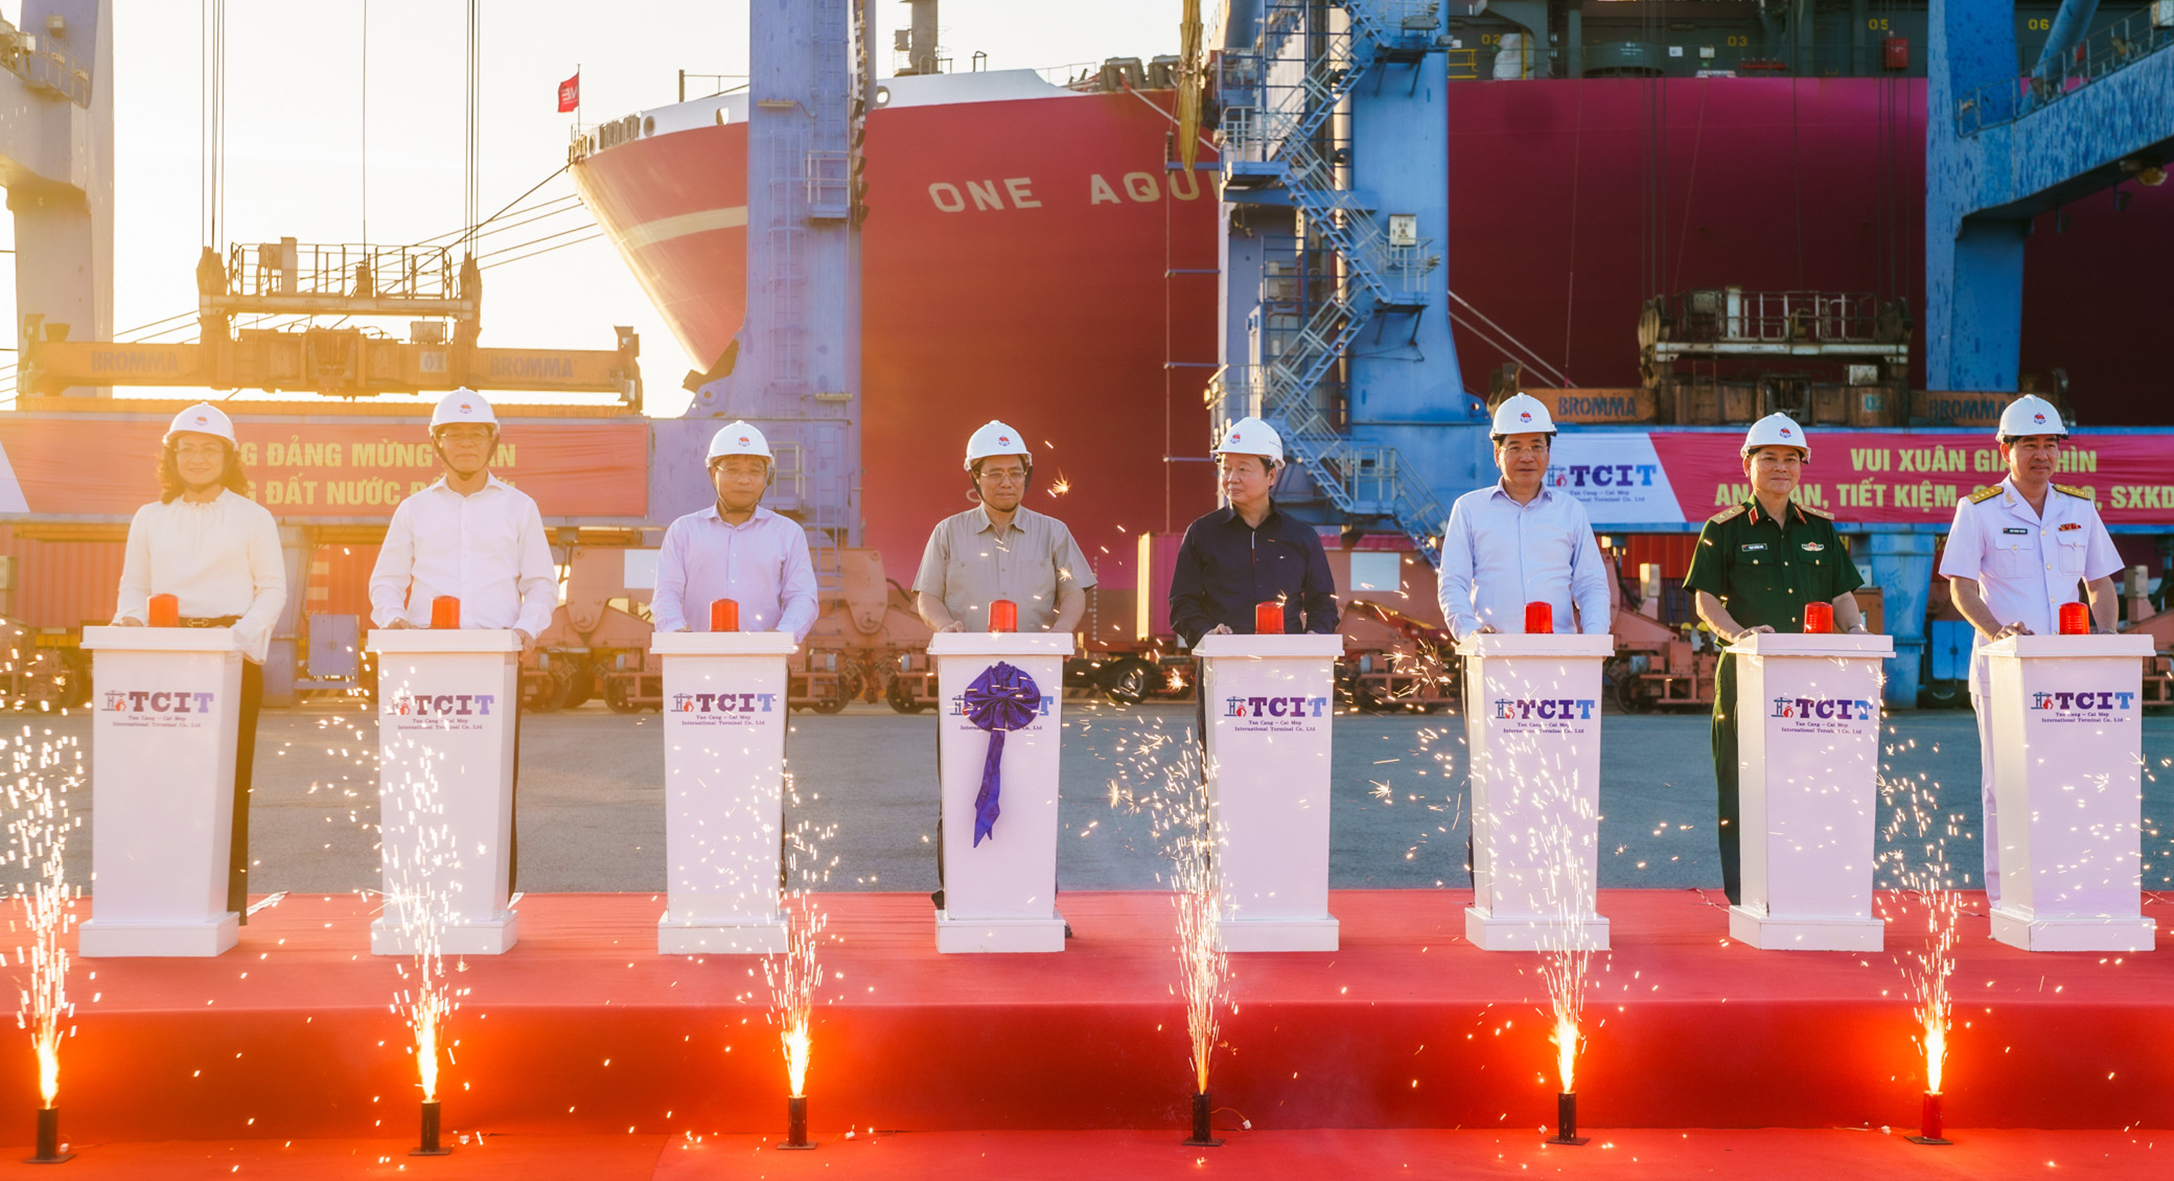 Thủ tướng Chính phủ Phạm Minh Chính, lãnh đạo các bộ và tỉnh Bà Rịa-Vũng Tàu thực hiện nghi thức bấm nút phát lệnh làm hàng đầu xuân tại cảng TCIT.